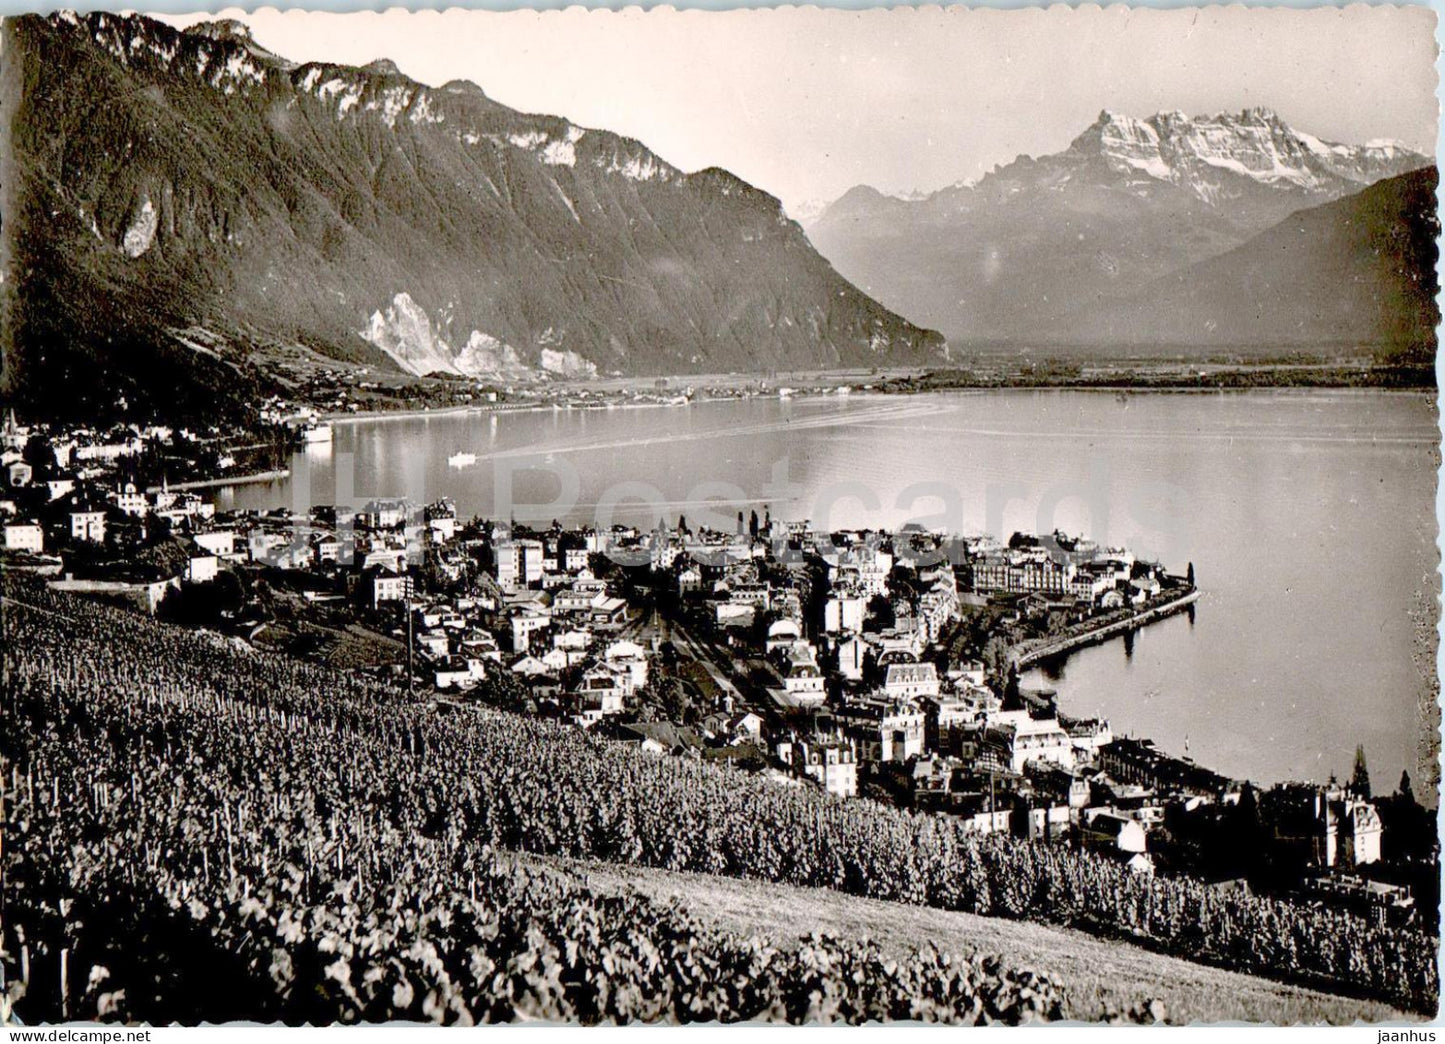 Lac Leman - Montreux et les Dents du Midi - 6612 - old postcard - Switzerland - used - JH Postcards